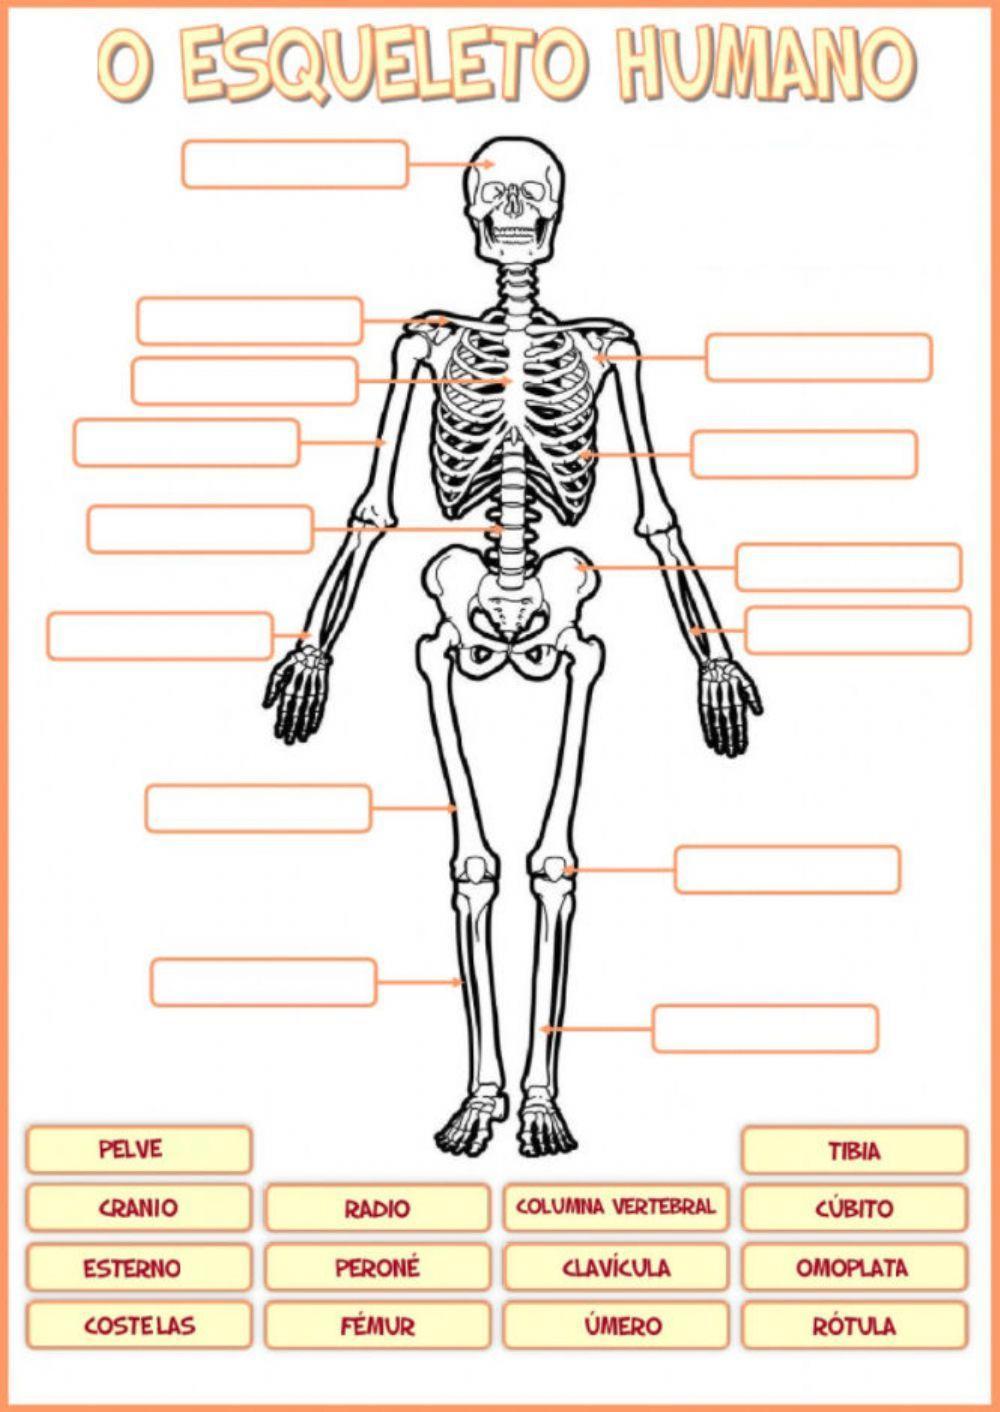 O Esqueleto humano